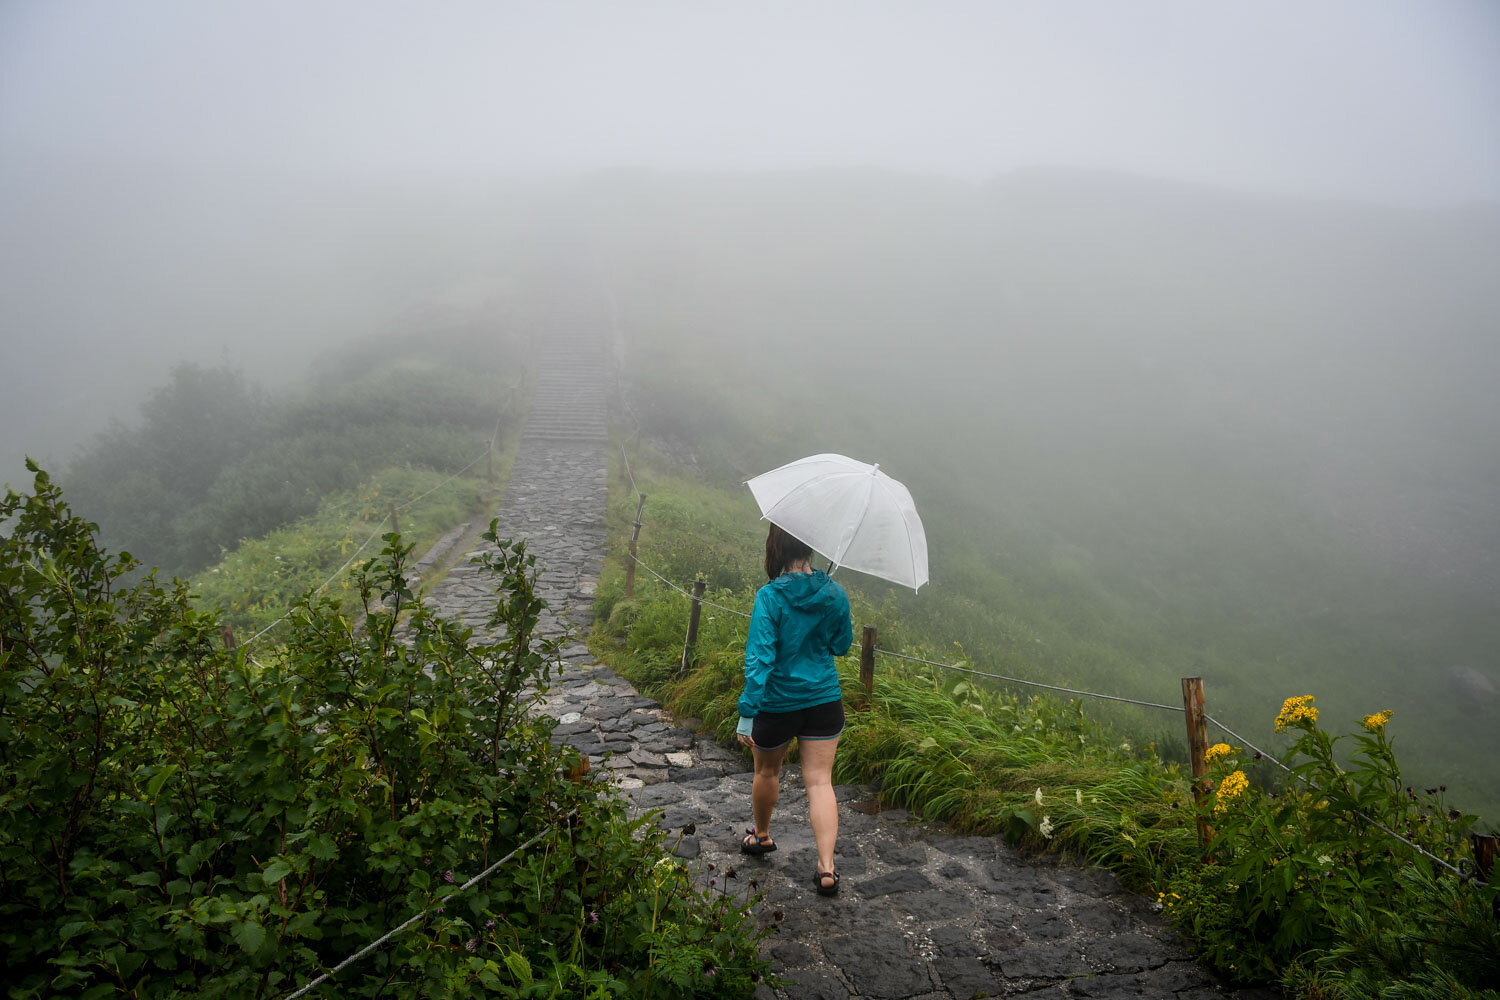 高山路线日本黑袍村多雨